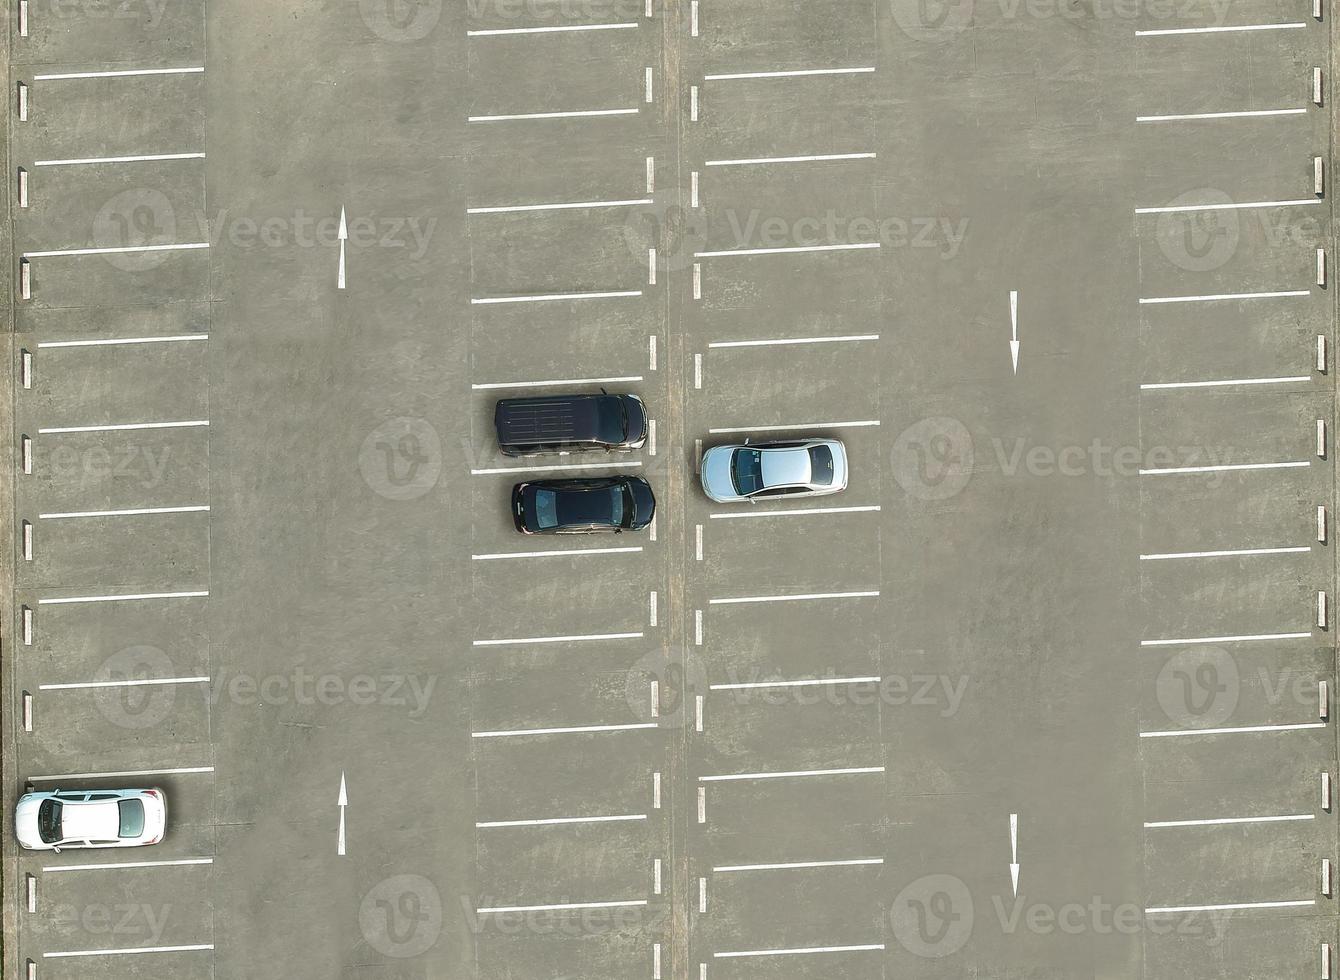 vista do drone acima de estacionamentos vazios, vista aérea foto